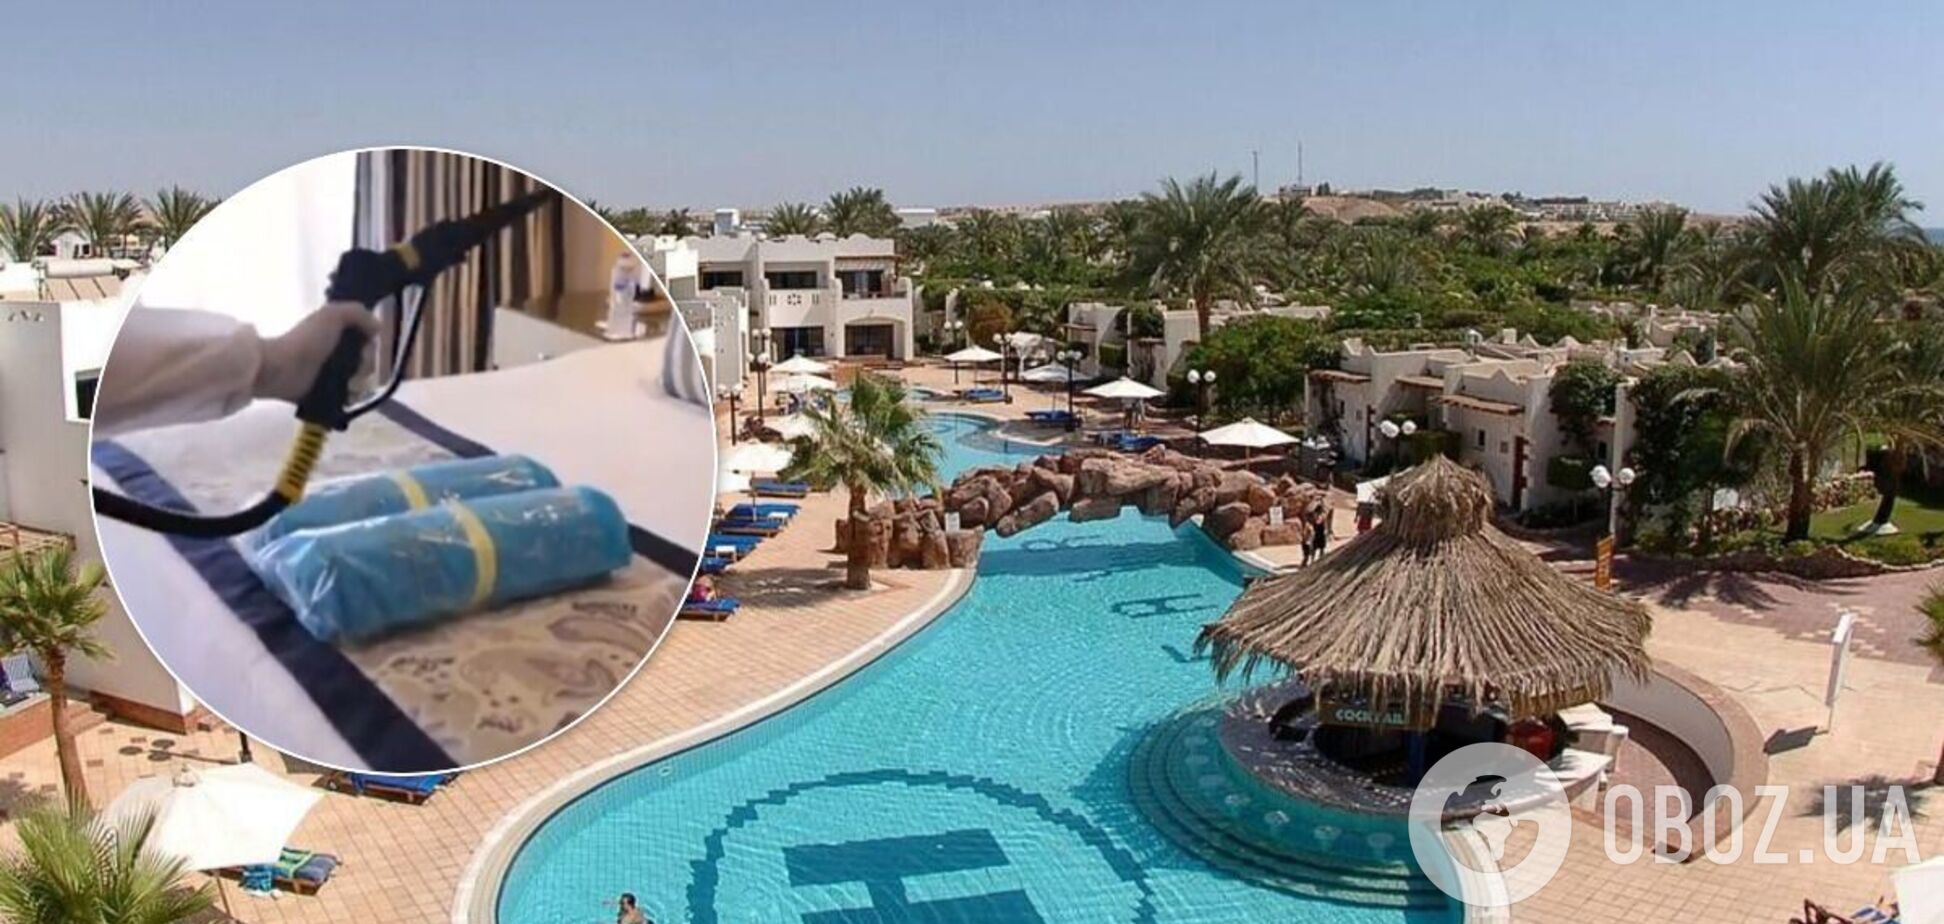 Какие меры безопасности принимают египетские отели